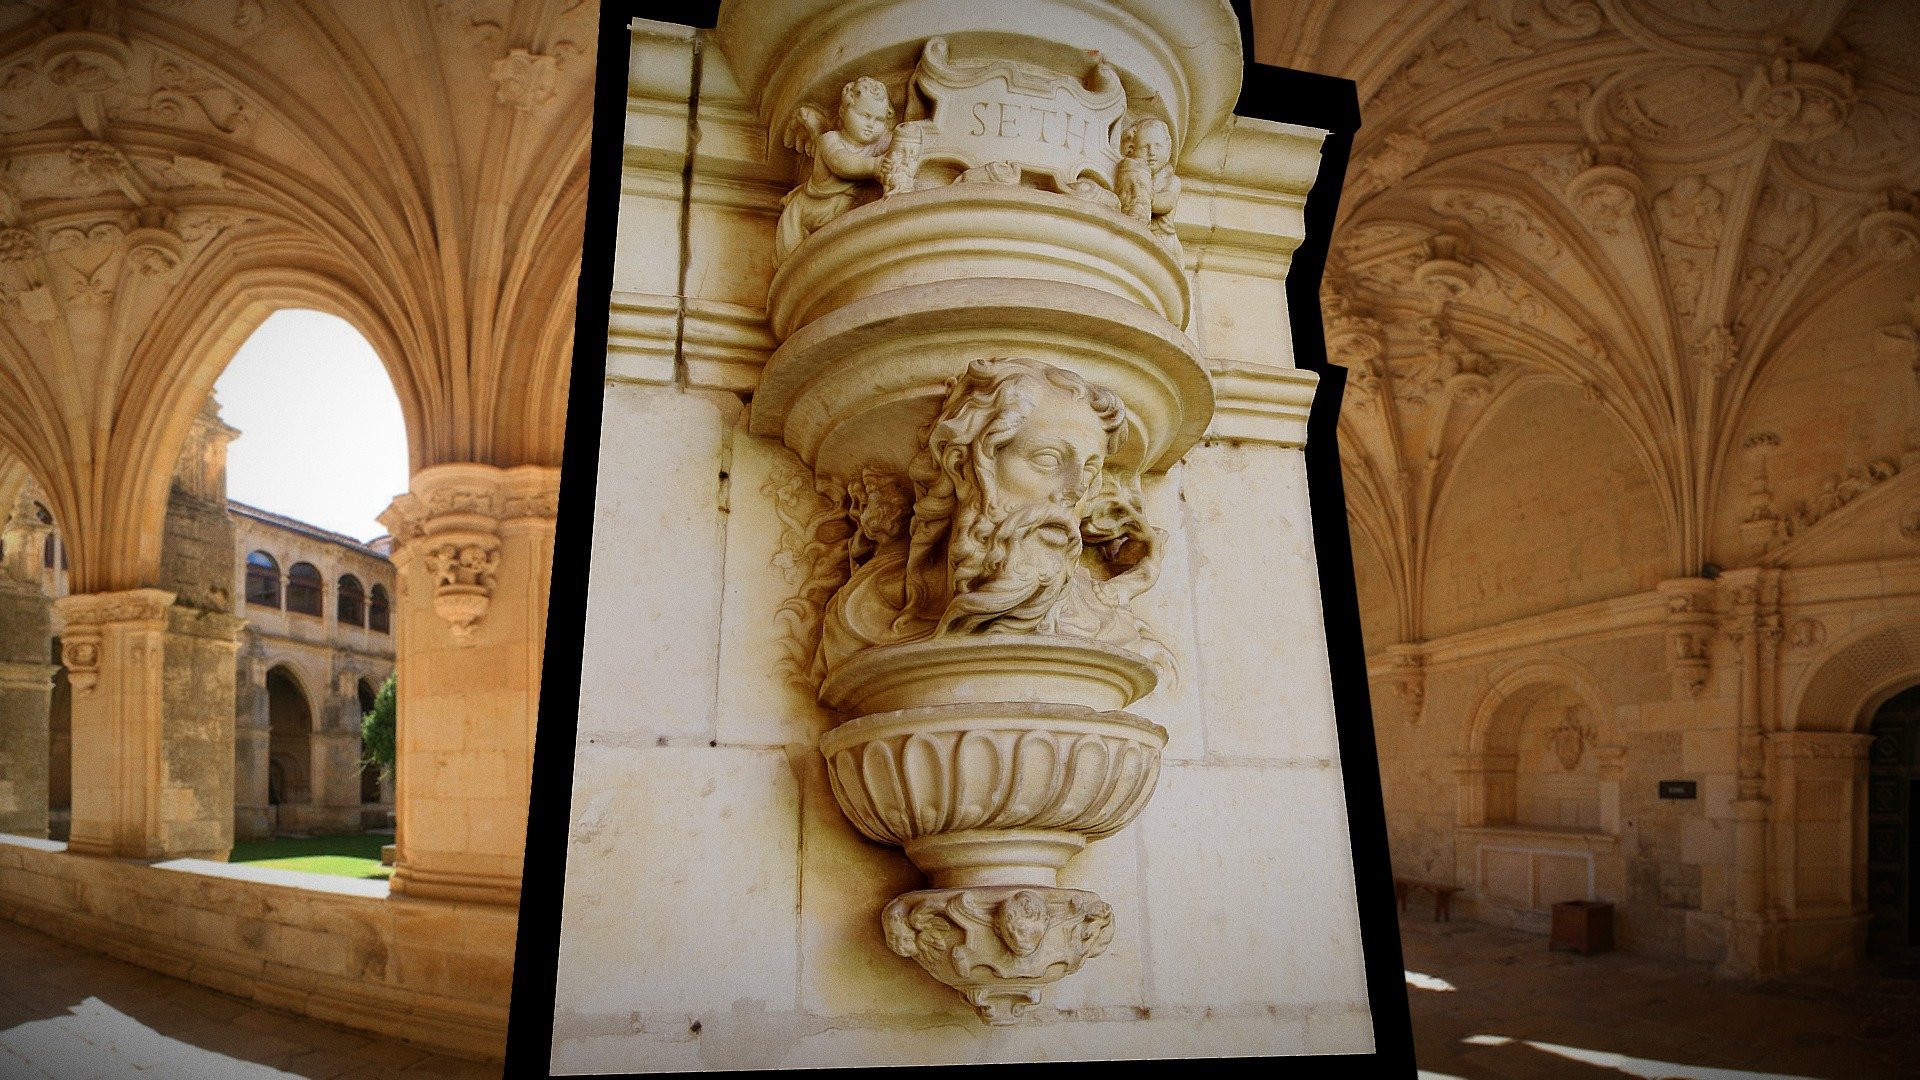 Ménsula del claustro bajo del Real Monasterio de San Zoilo (1537-1577).
Representa a Seth, tercer hijo de Adán, padre de Enós, según el relato bíblico. 

Se trata de una talla de gran calidad atribuida al maestro burgalés Miguel de Espinosa, director de la obra escultórica del claustro. Está situada en la panda este, entre la puerta que da acceso a la sacristía y el nicho que aloja la escultura de Cristo atado a la columna junto a la puerta procesional de la iglesia.

Modelo de prueba en toma rápida.

Clunypedia/Map - Monasterio de San Zoilo - Ménsula de Seth - Download Free 3D model by Zoilo (@iliedom) 3d model